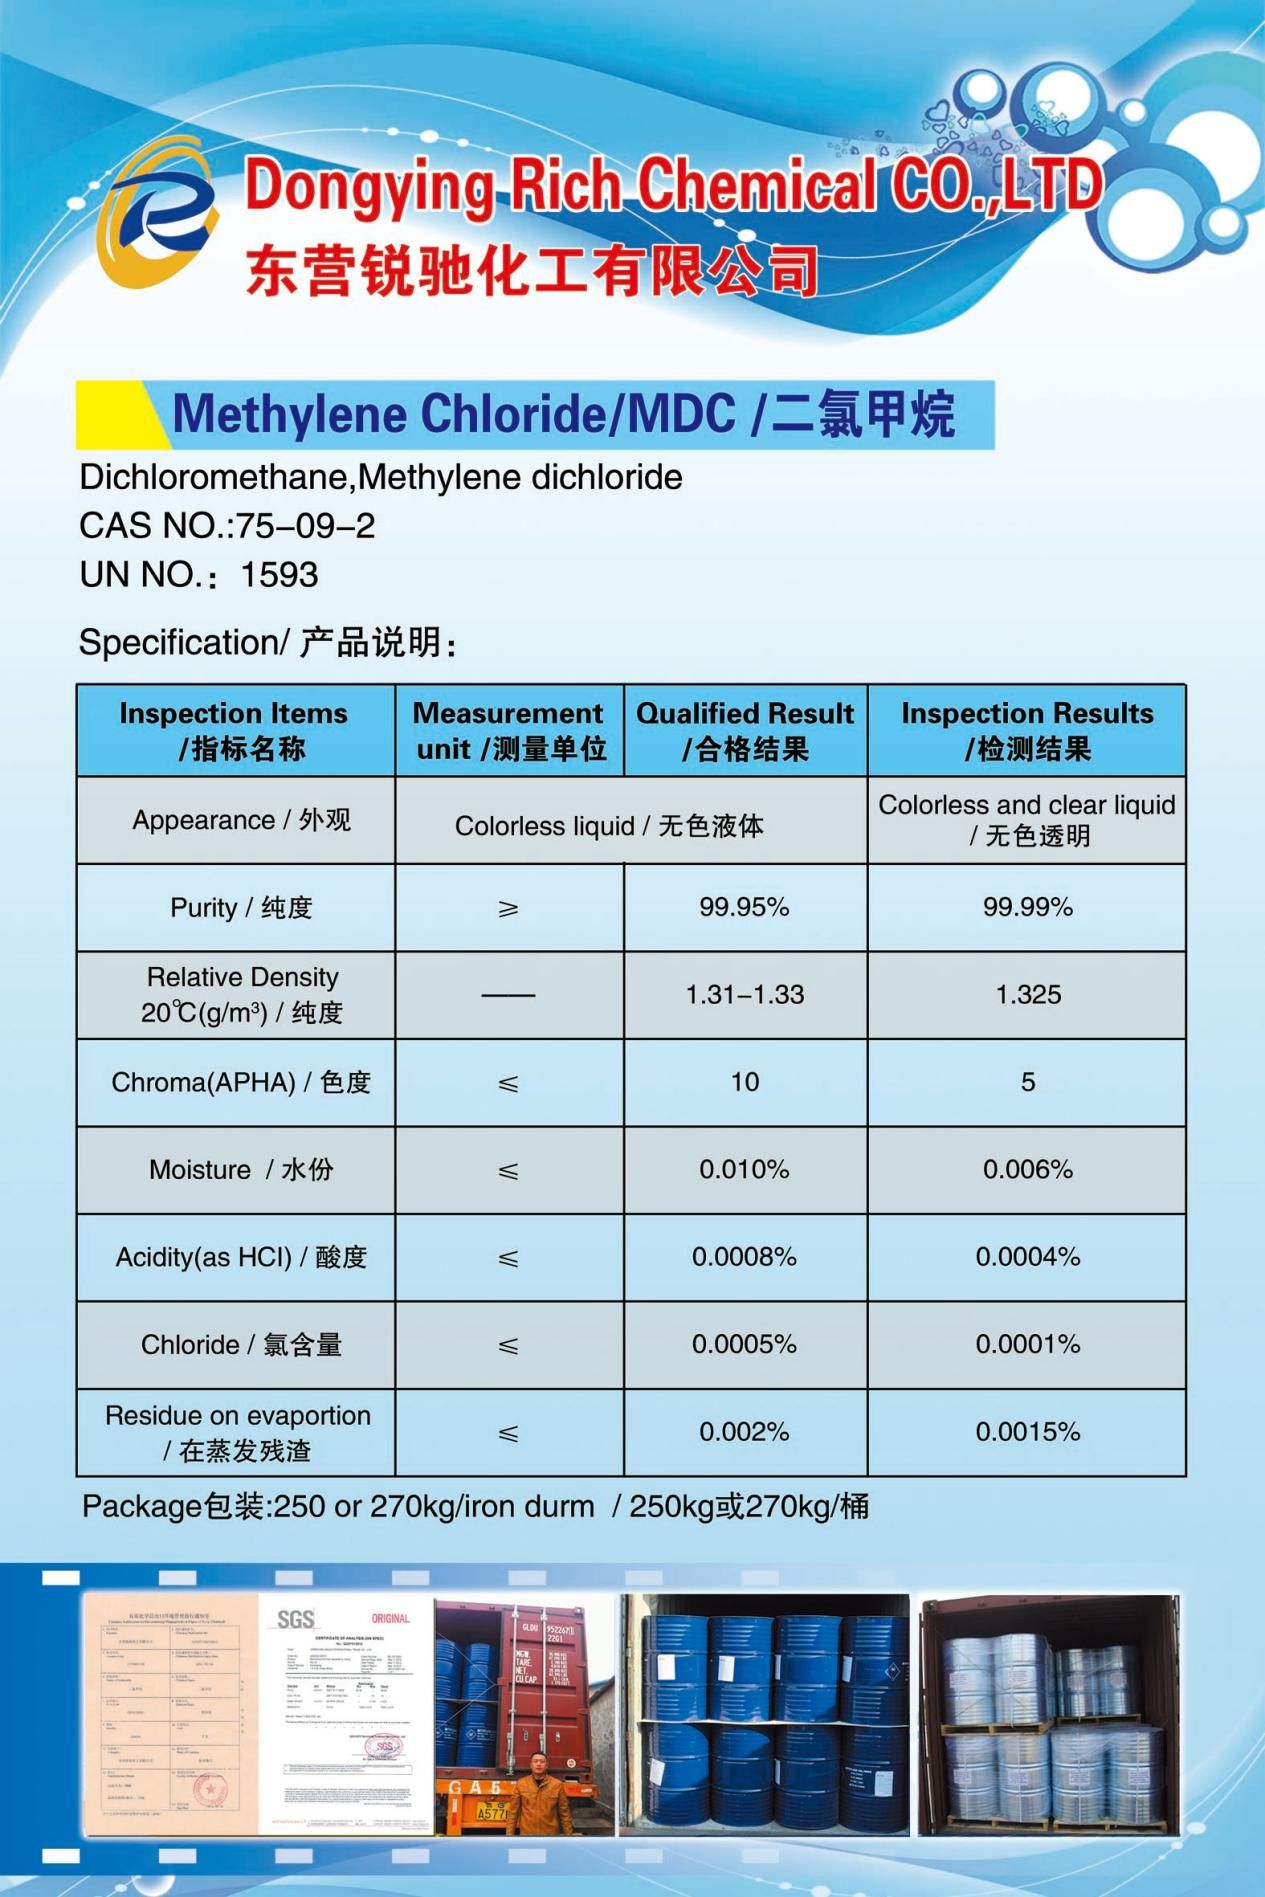 Methyleenchloride (4)